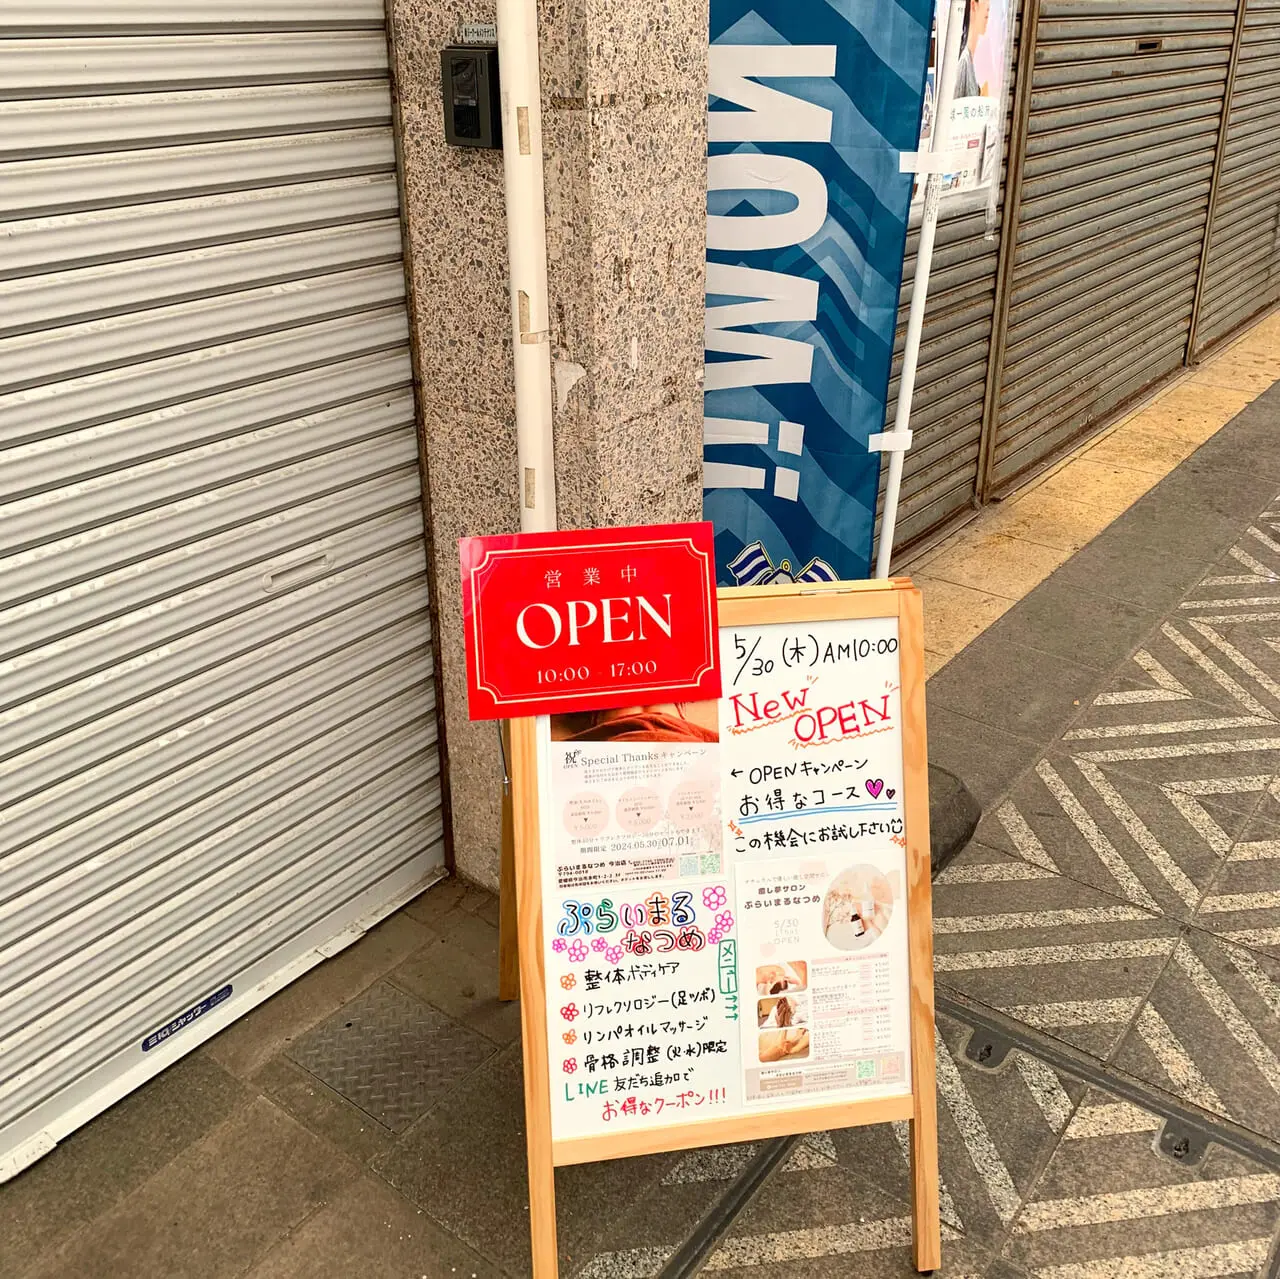 商店街の中に新しいマッサージ店「ぷらいまるなつめ」がオープンしました!!